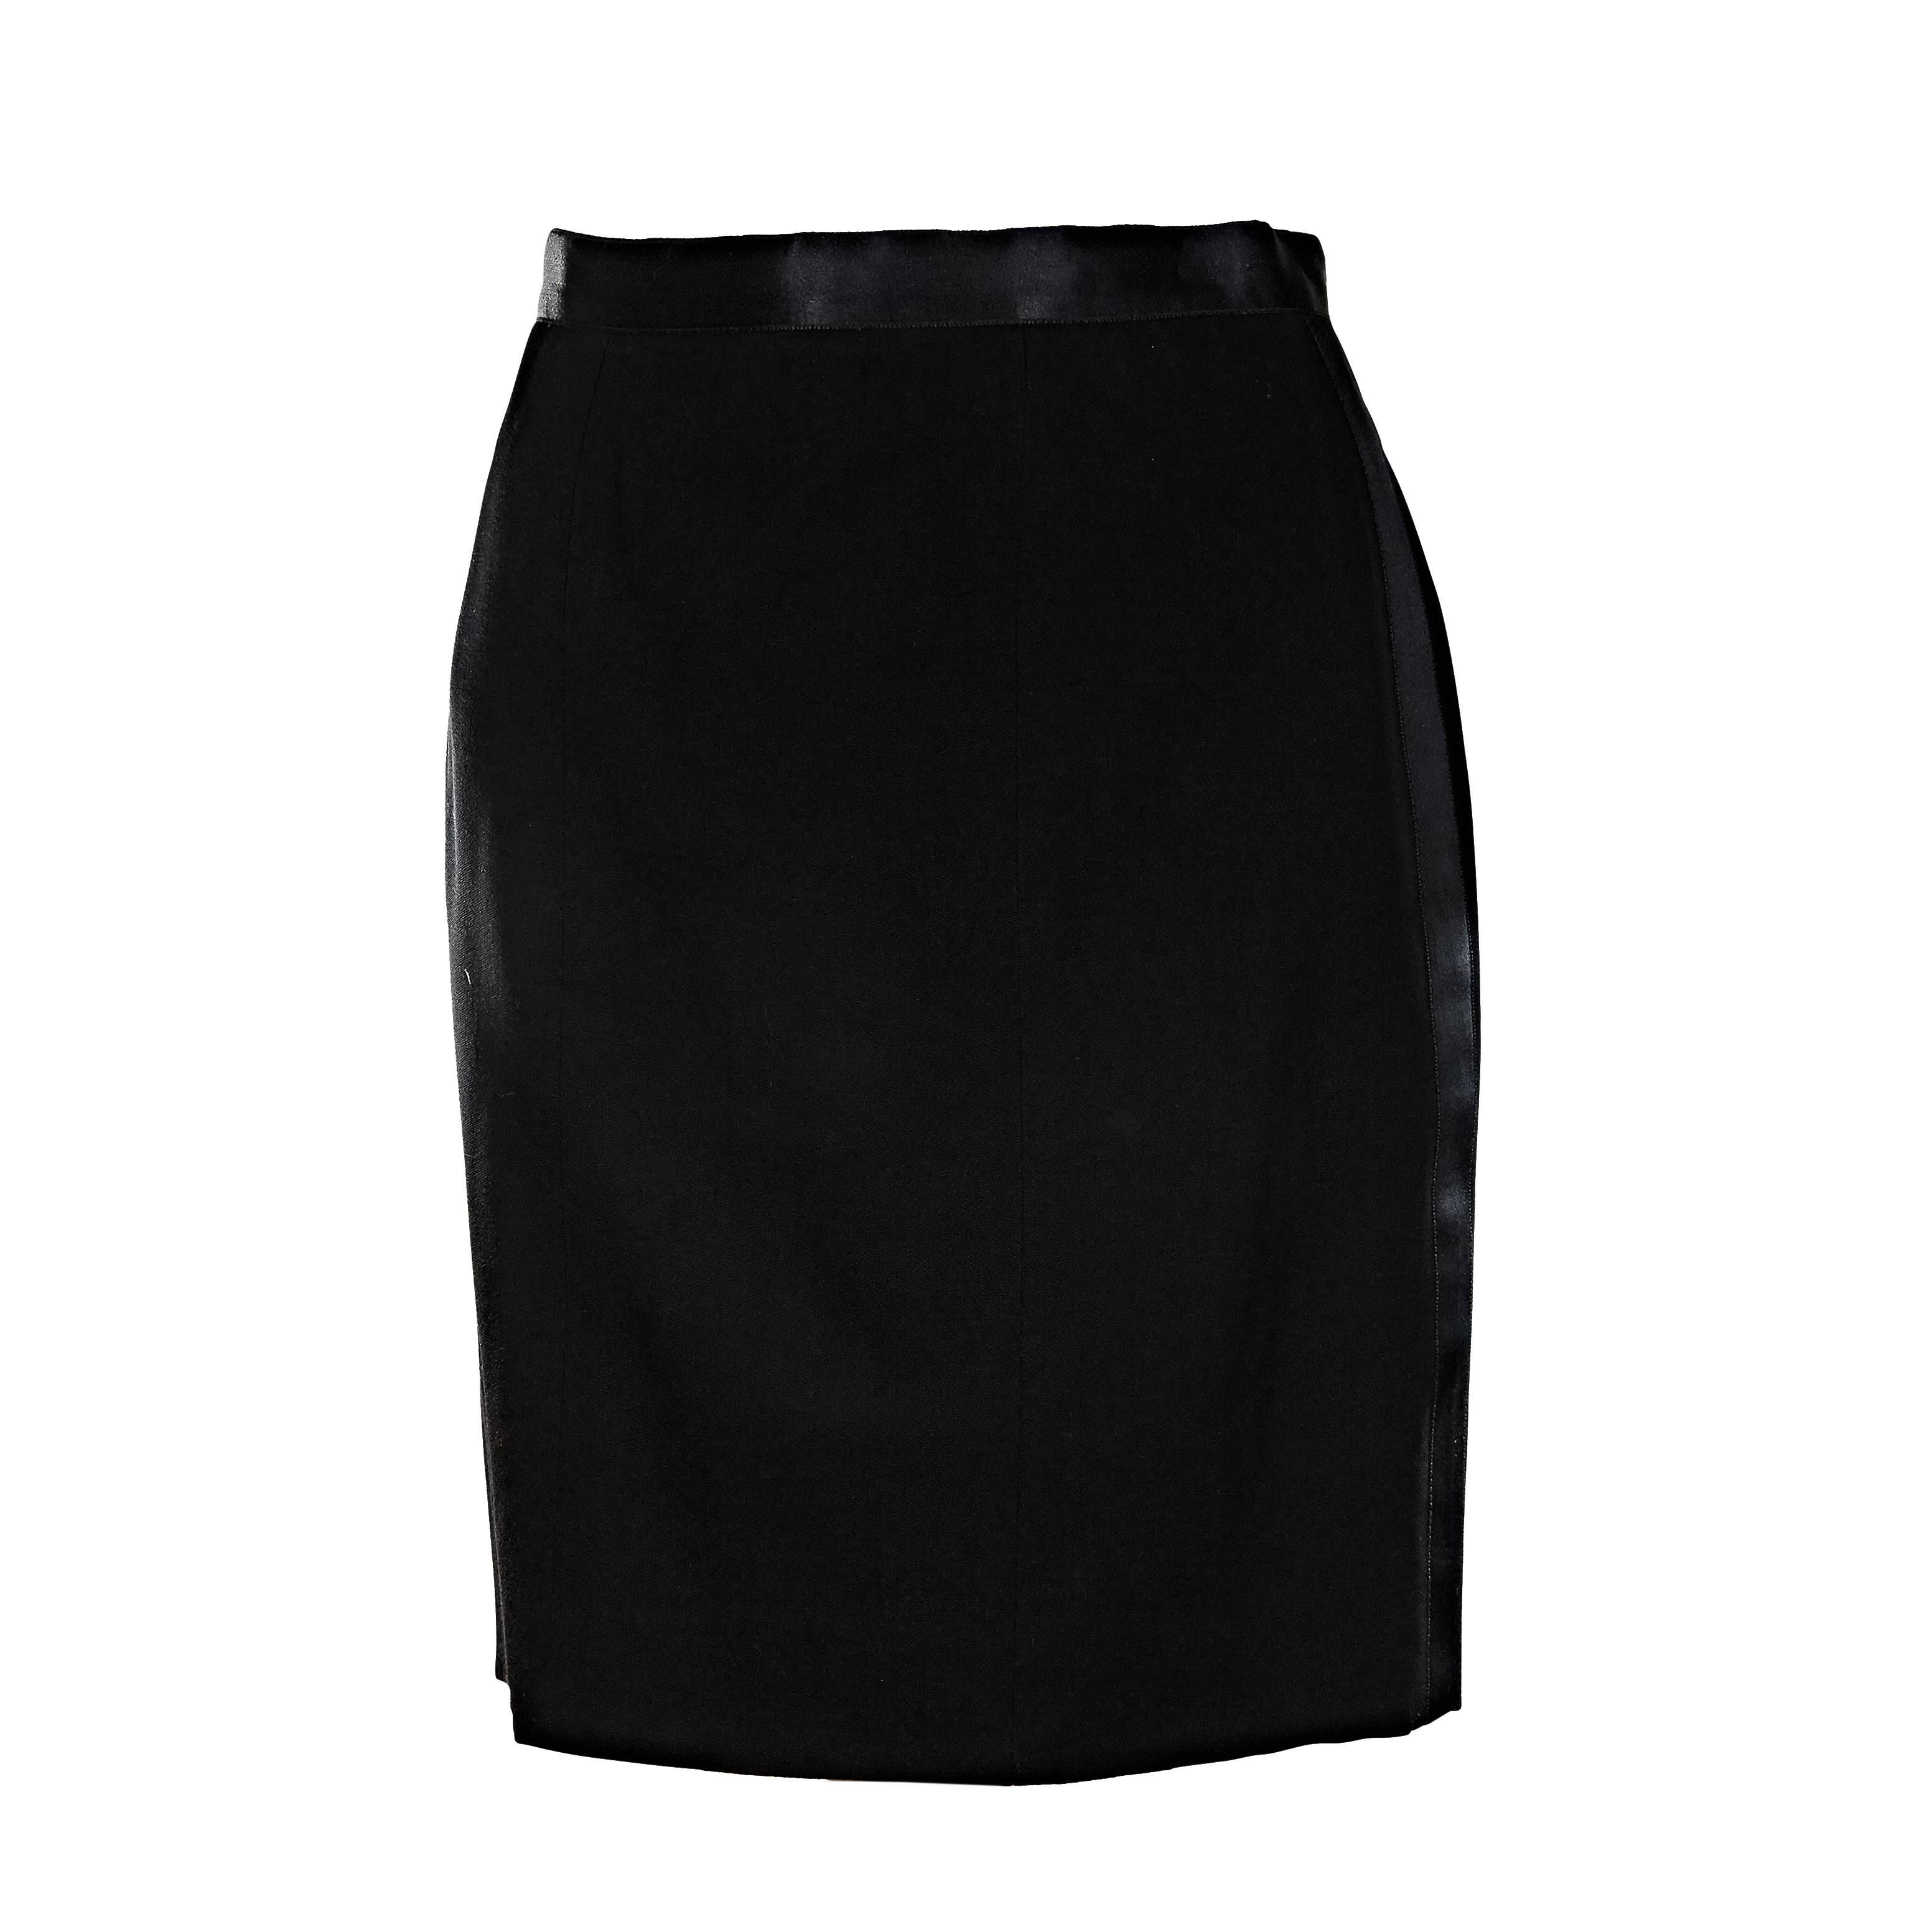 Black Chanel Tuxedo Skirt